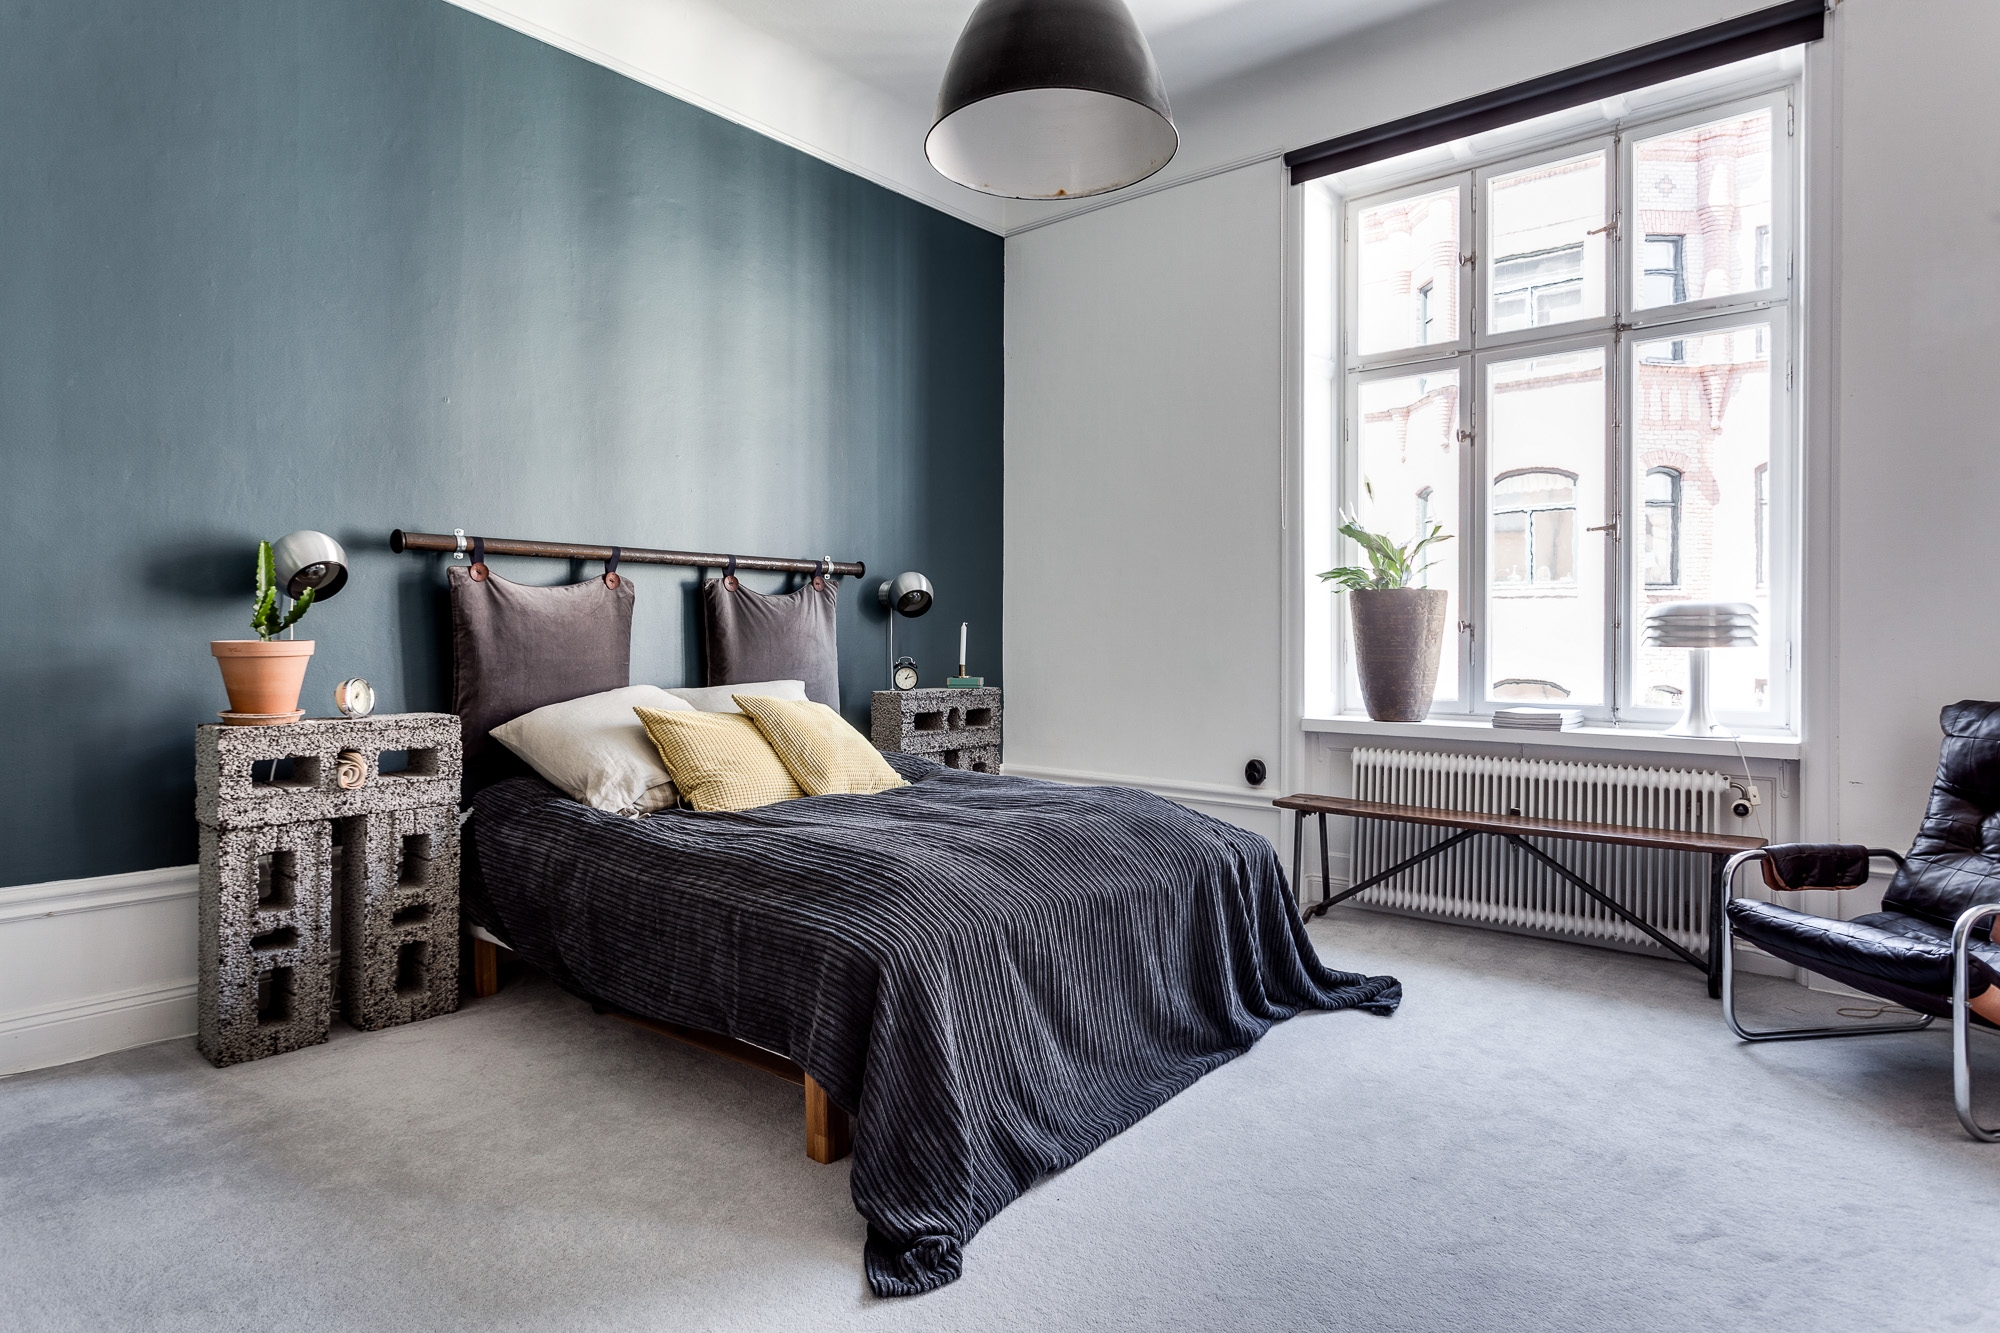 In Deze Vintage Slaapkamer Vind Je Hele Leuke En Inspirerende Decoratie Ideeen Homease